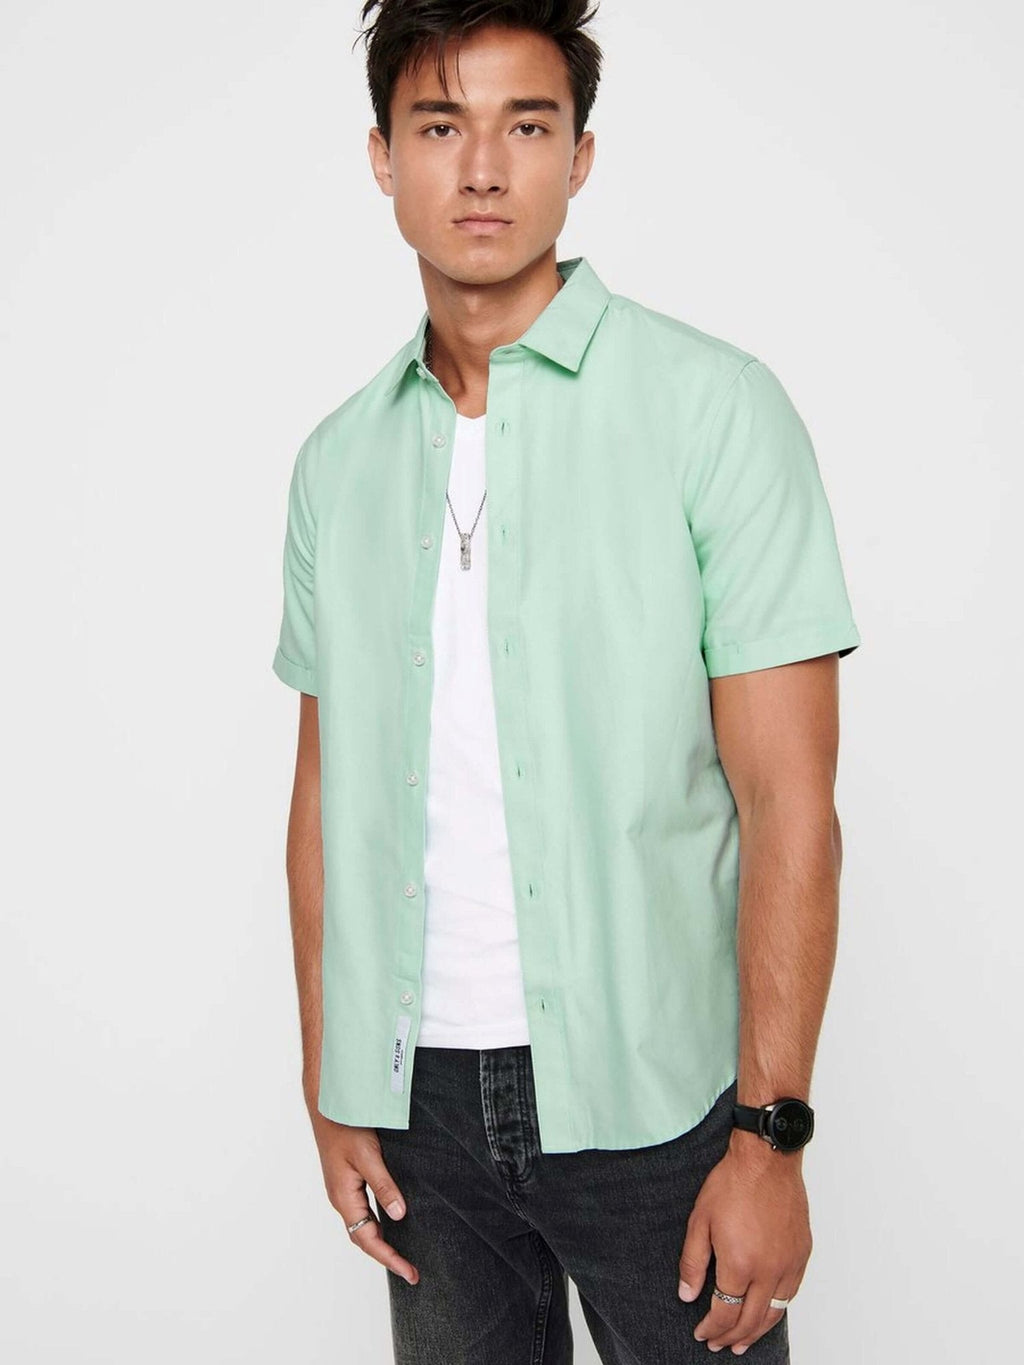 Košeľa s krátkym rukávom - zelená